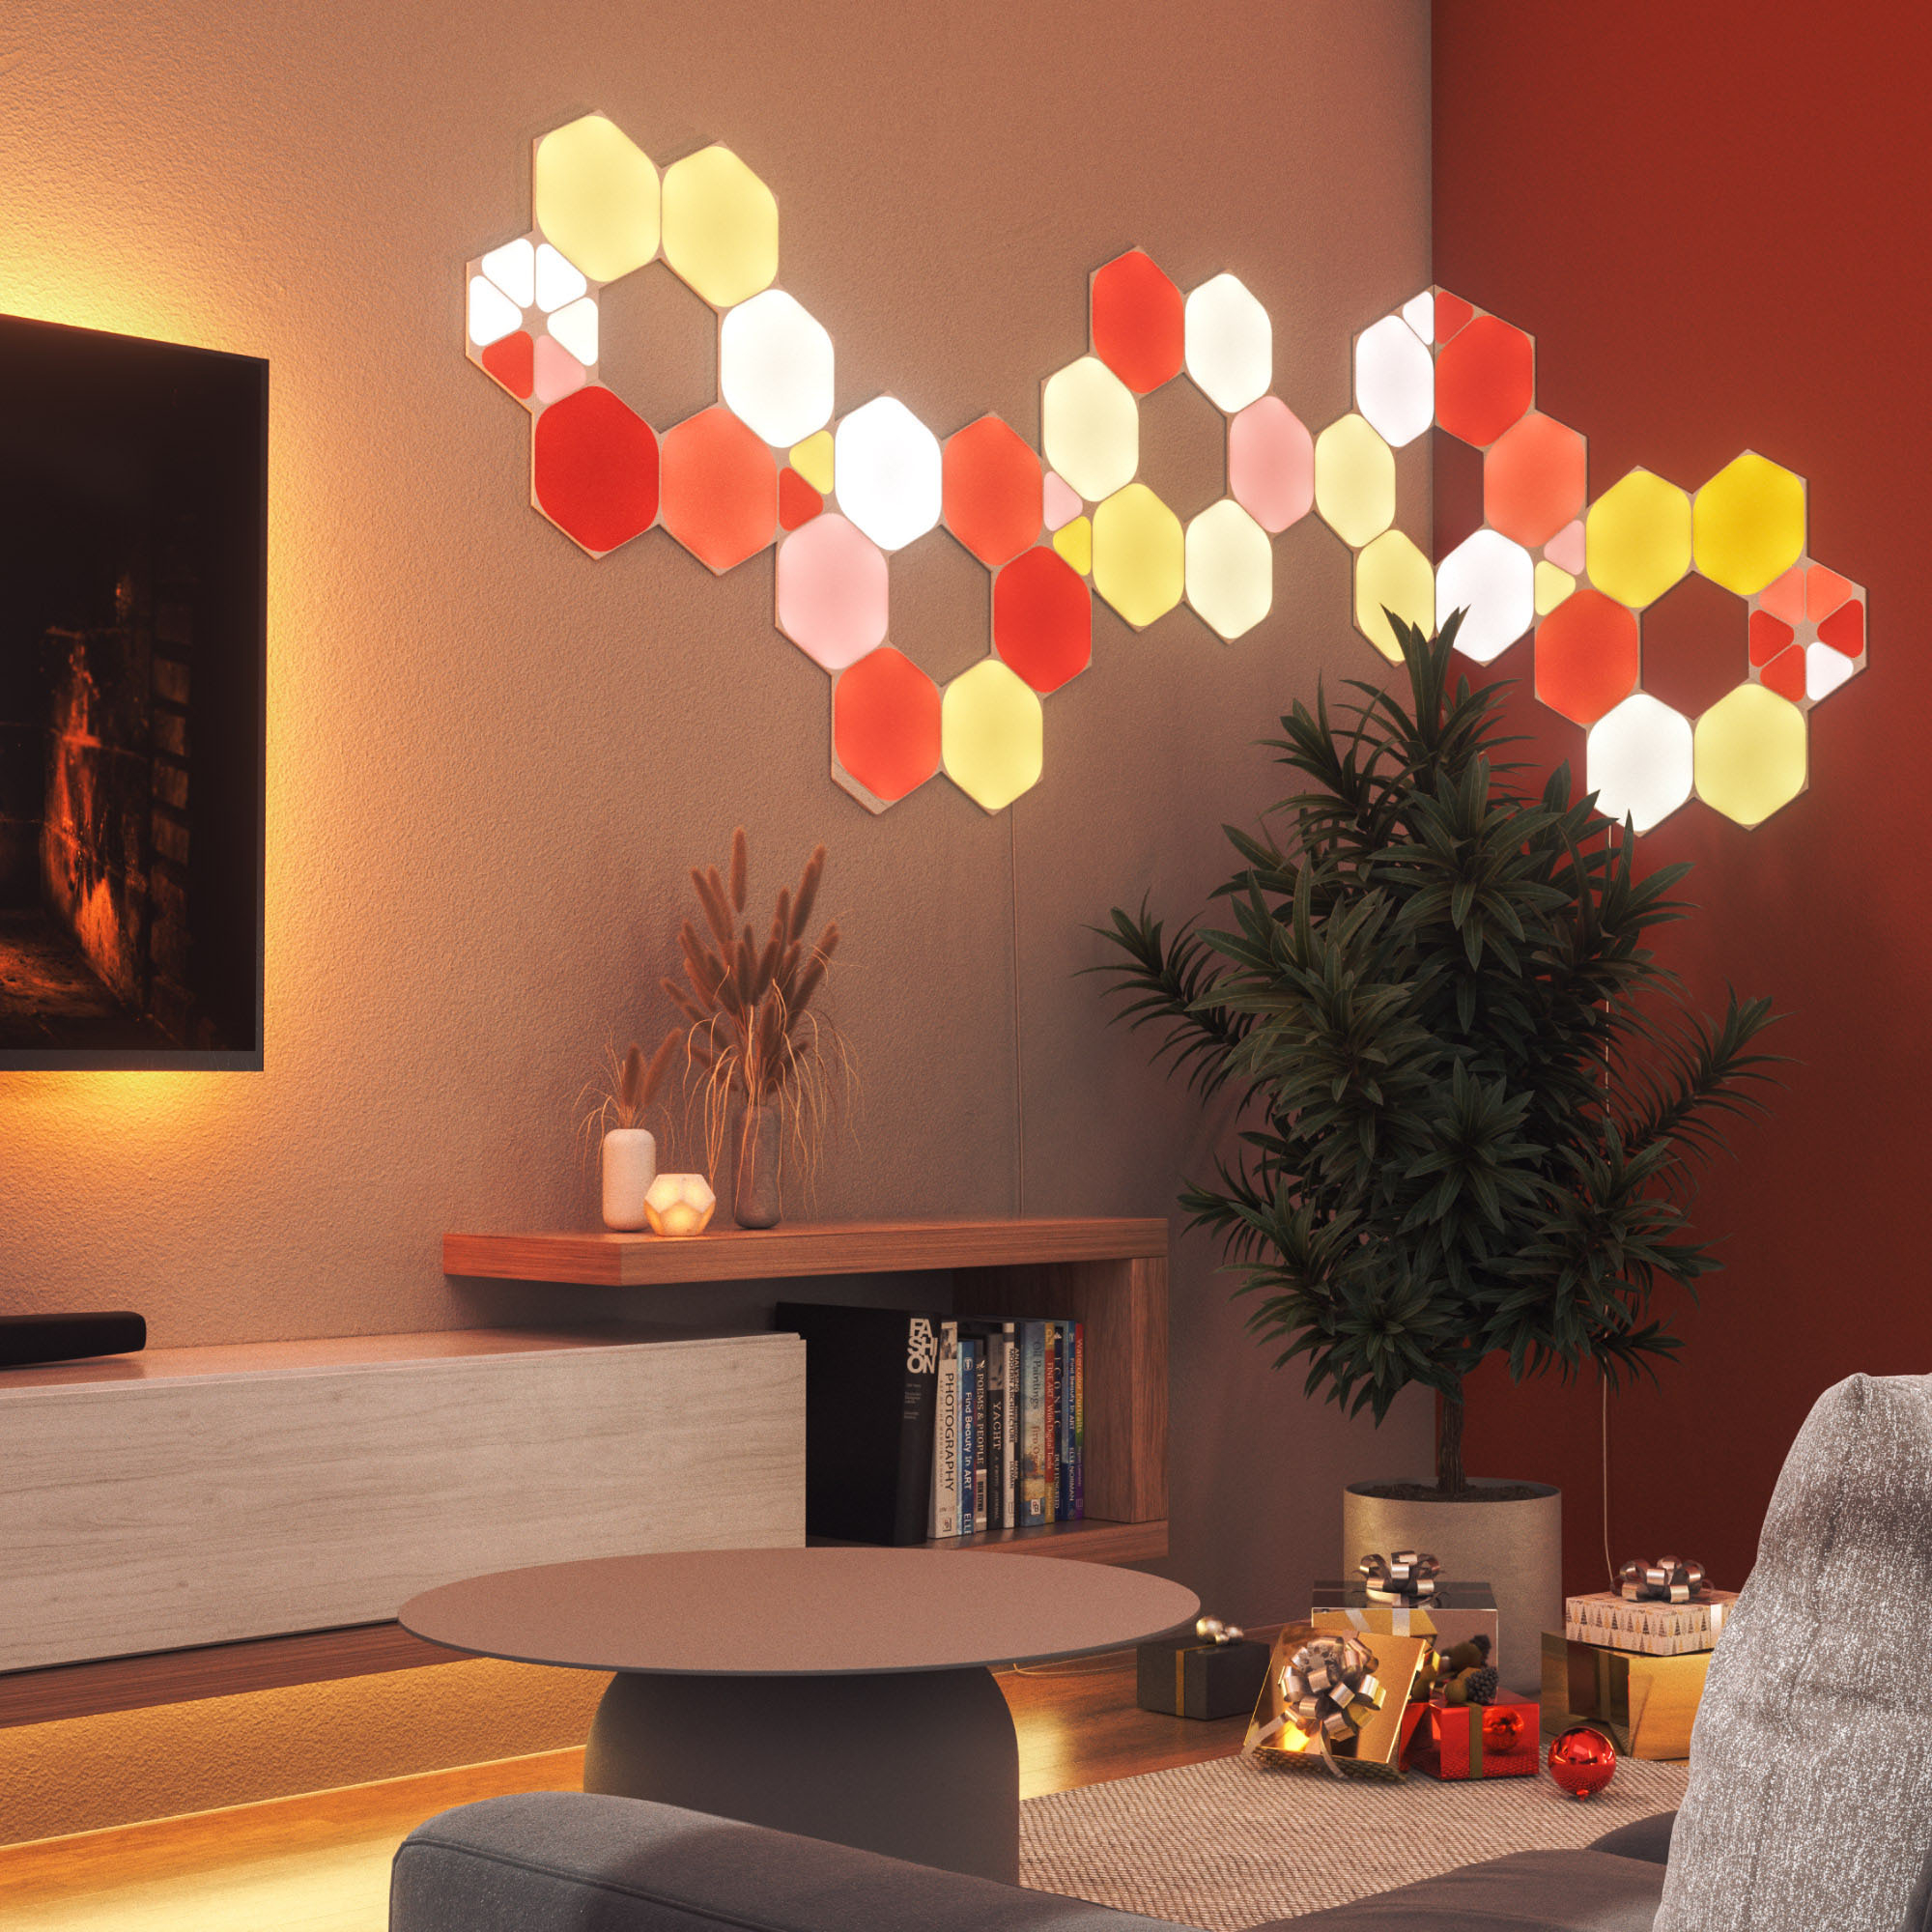 Nanoleaf Shapes Hexagons Expansion Pack (3 Panels) Multicolor NL42-0001HX- 3PK - Best Buy | Leuchtfiguren